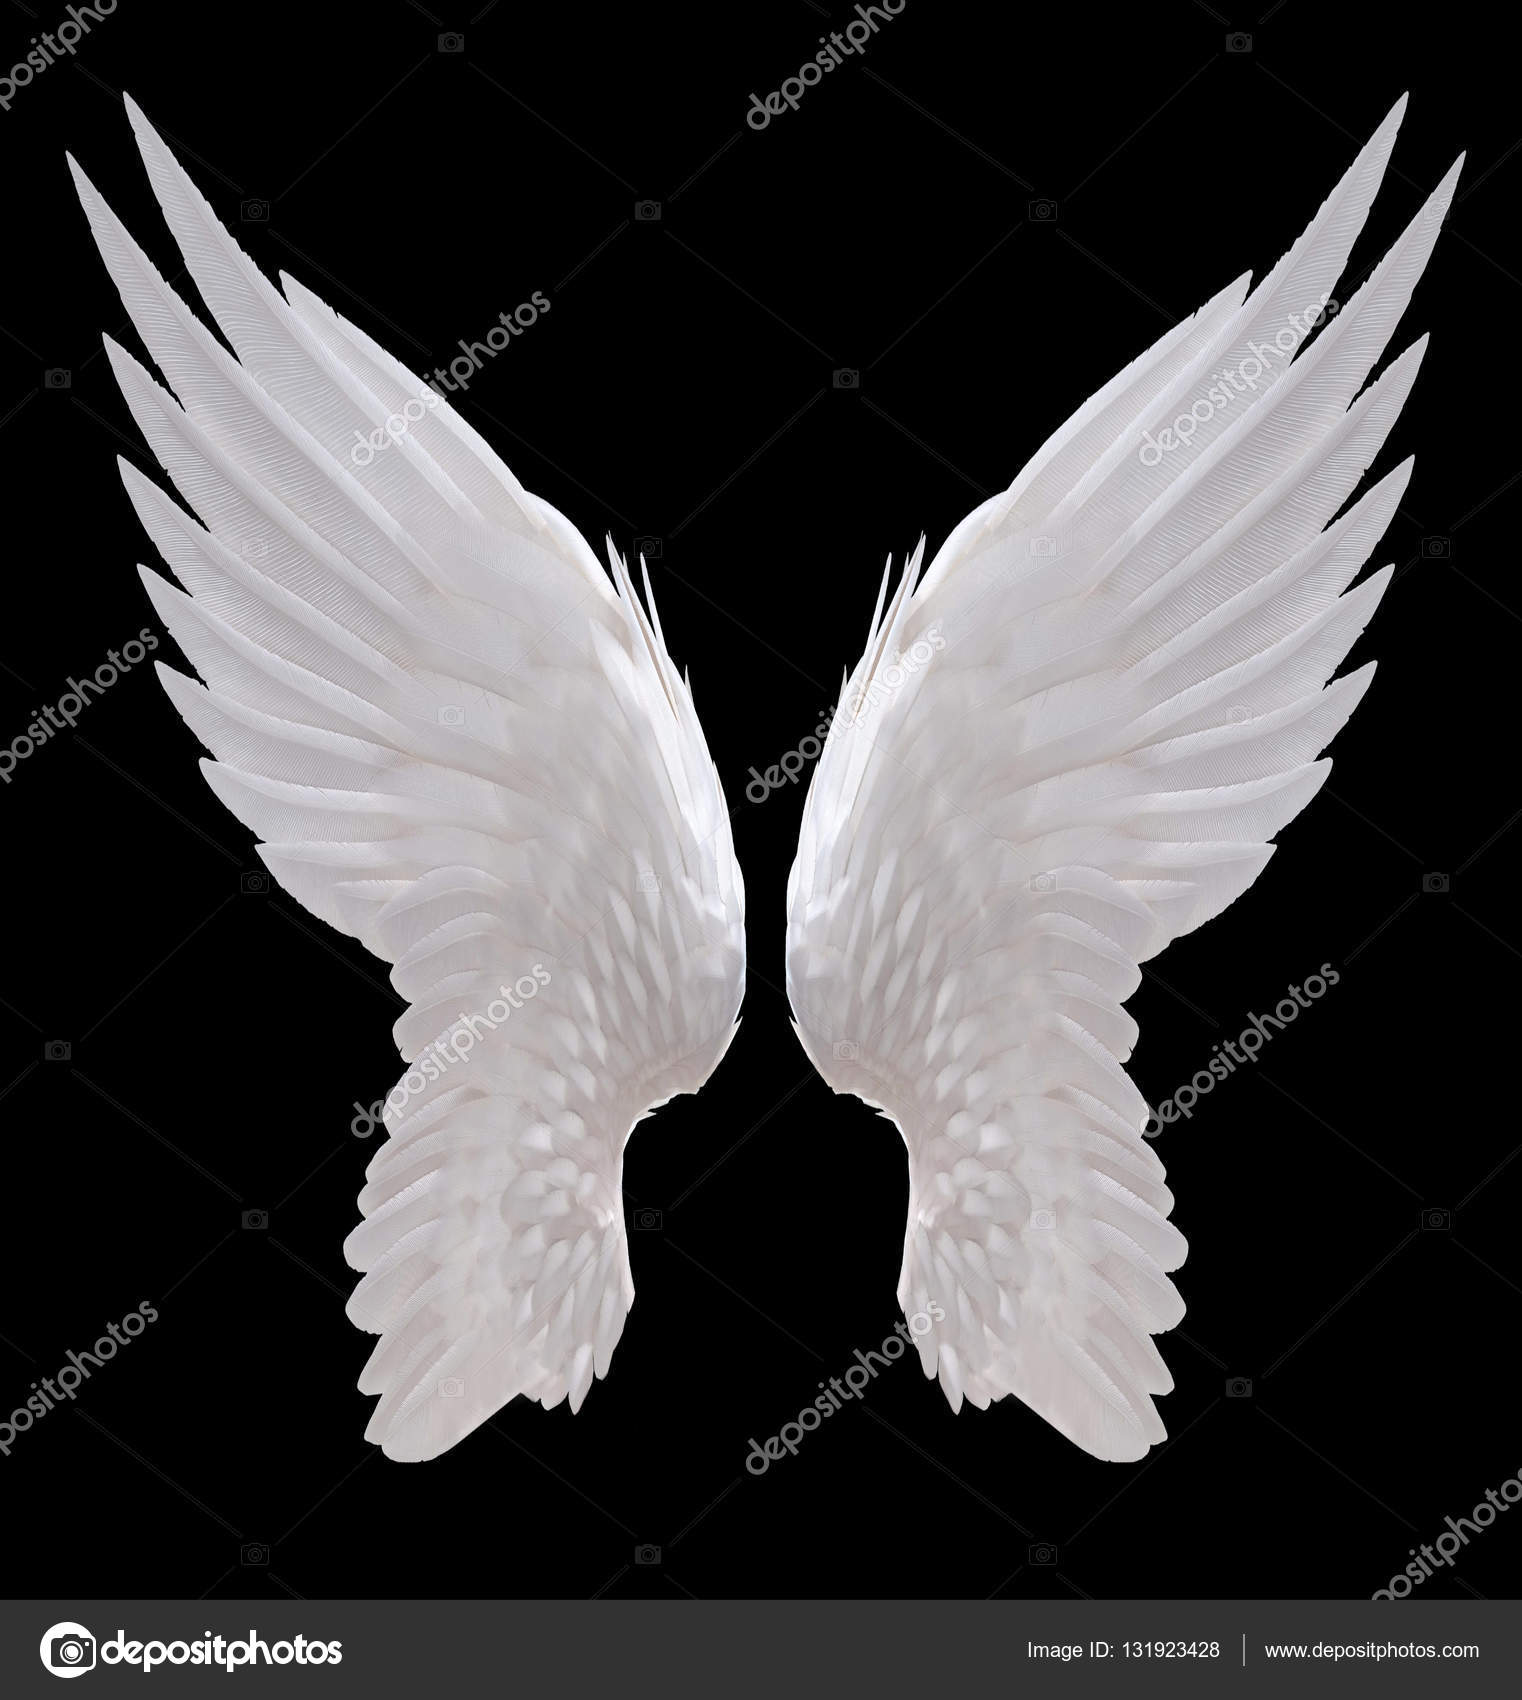 white angel wings — Stock Photo © jakkapan #131923428